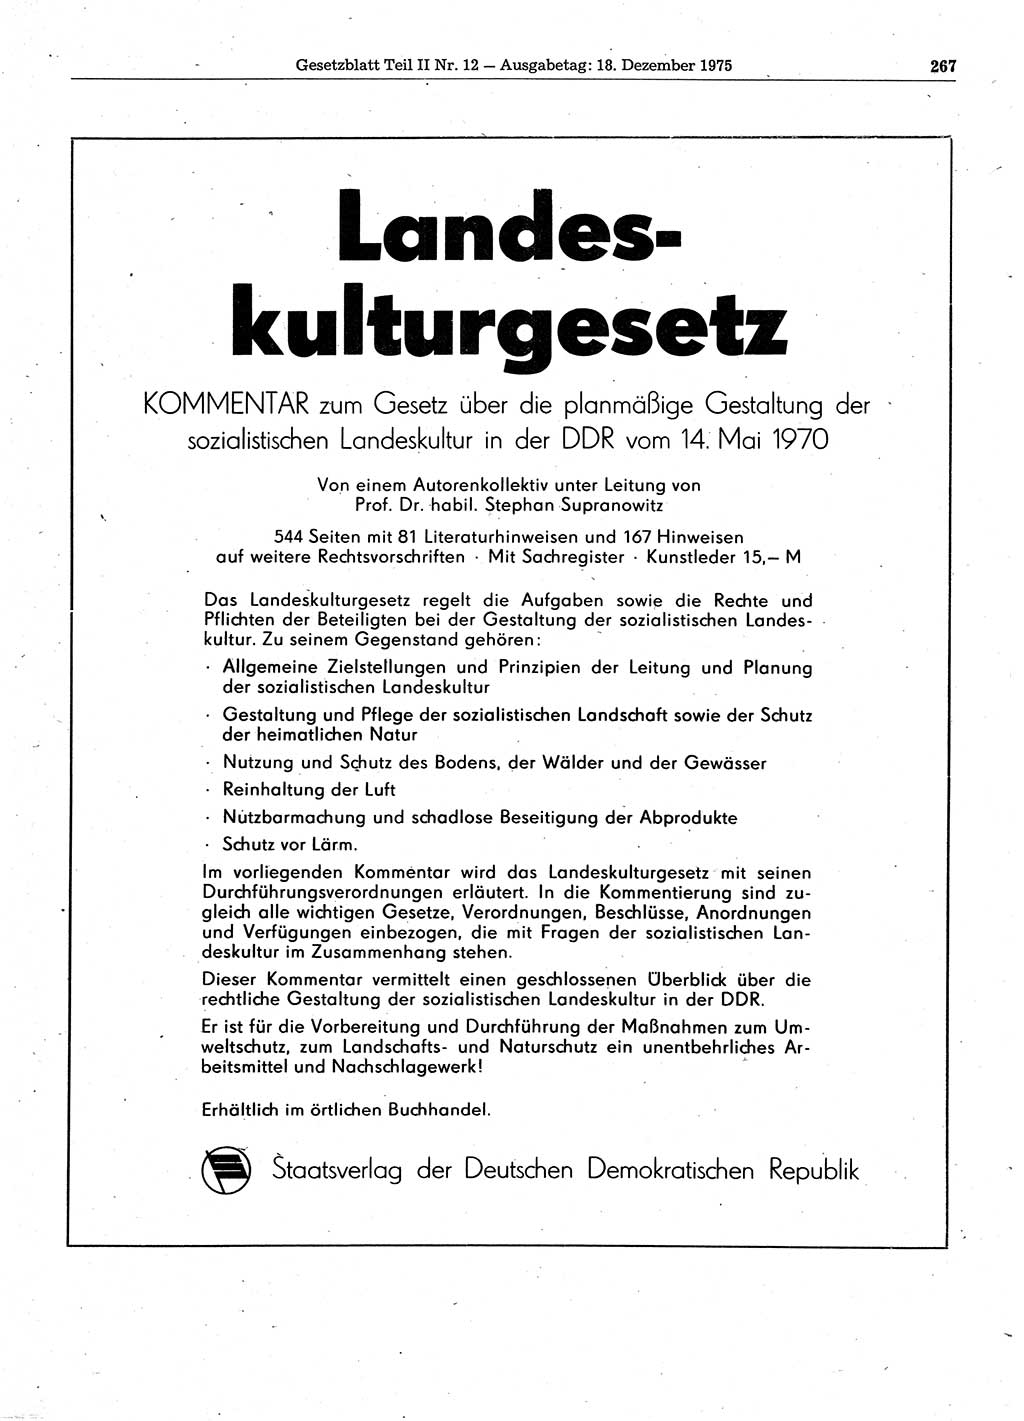 Gesetzblatt (GBl.) der Deutschen Demokratischen Republik (DDR) Teil ⅠⅠ 1975, Seite 267 (GBl. DDR ⅠⅠ 1975, S. 267)